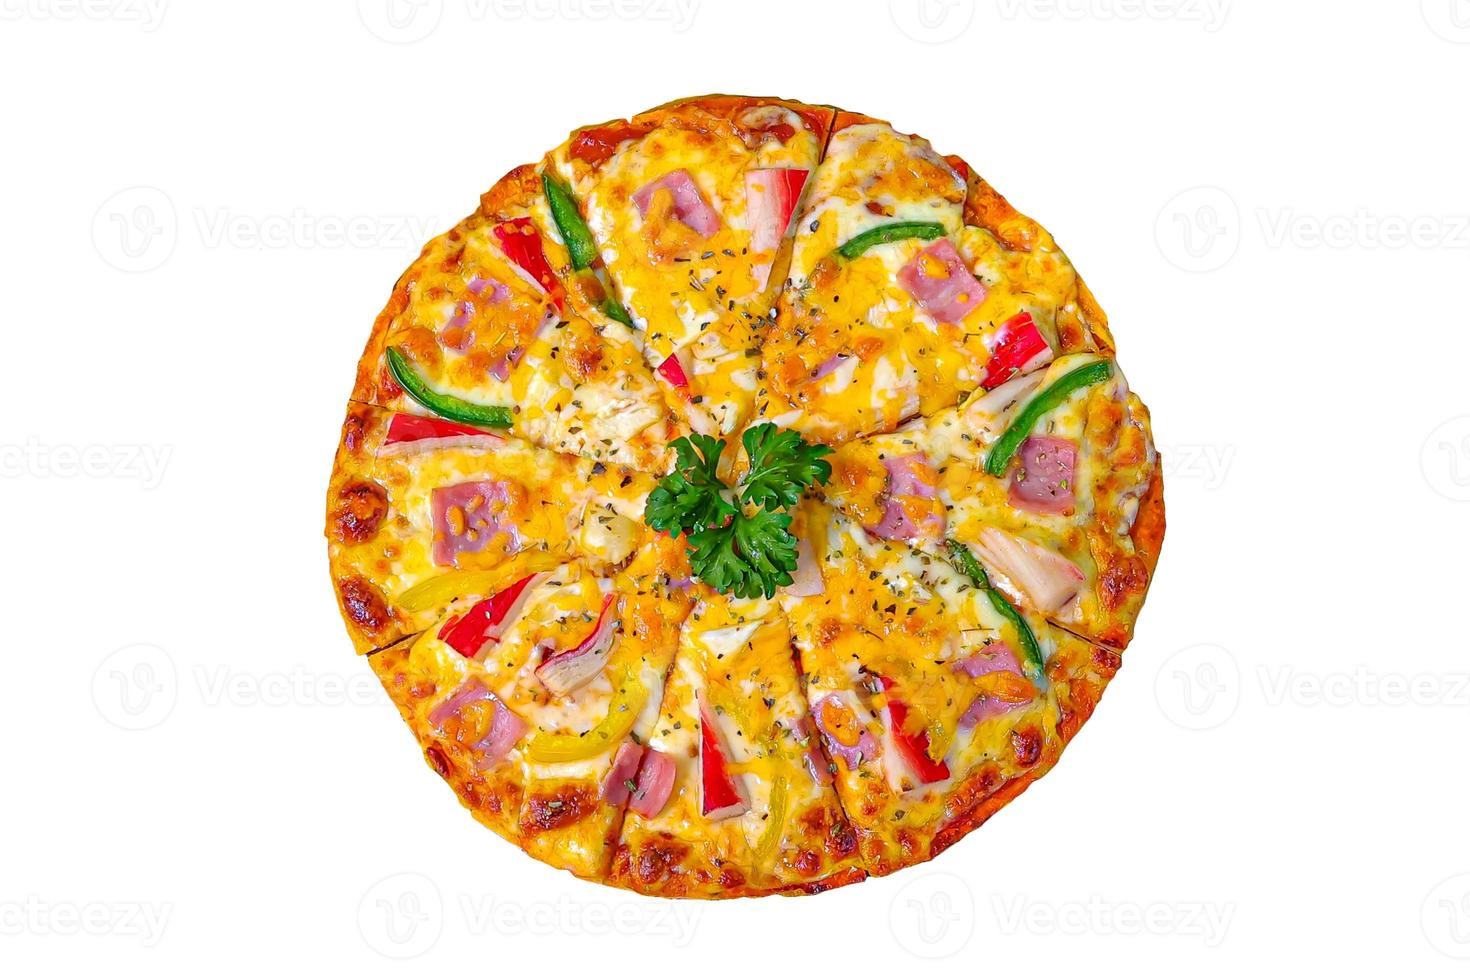 pizza con palitos de cangrejo, jamón y queso, foto de muy alta calidad sobre fondo blanco.